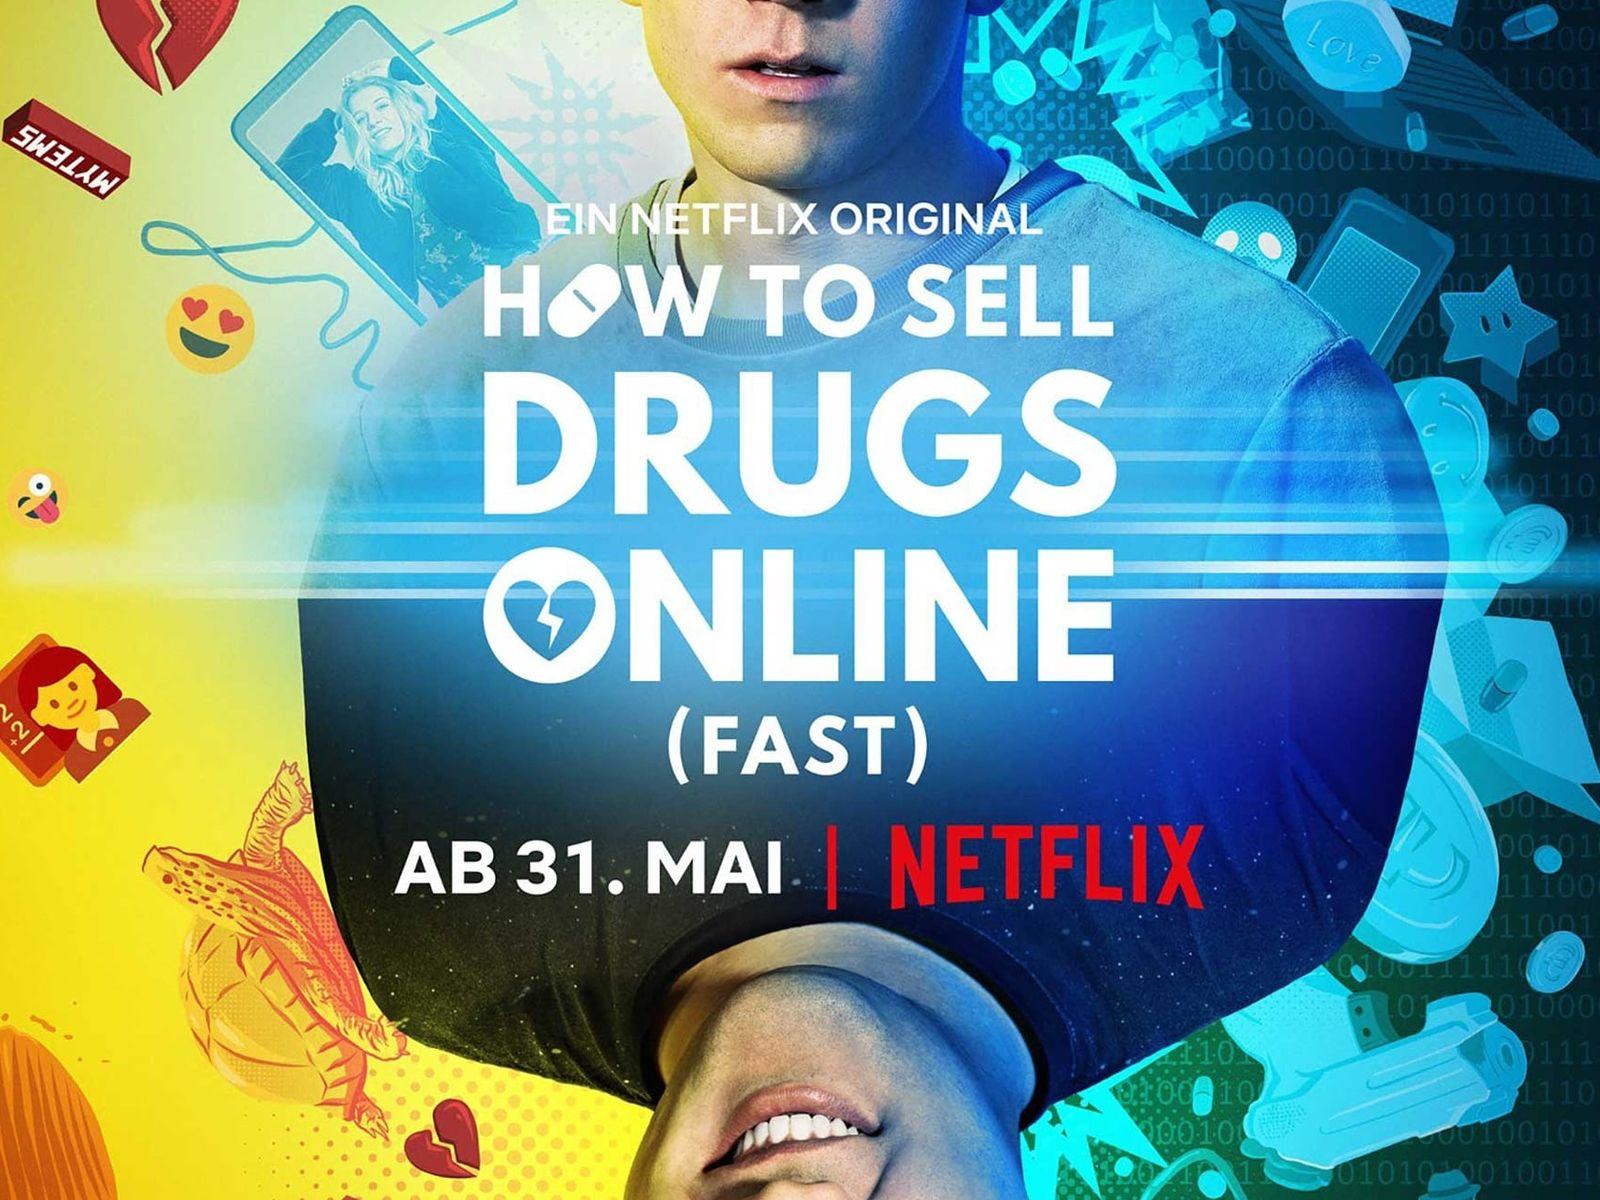 Darknet online drugs